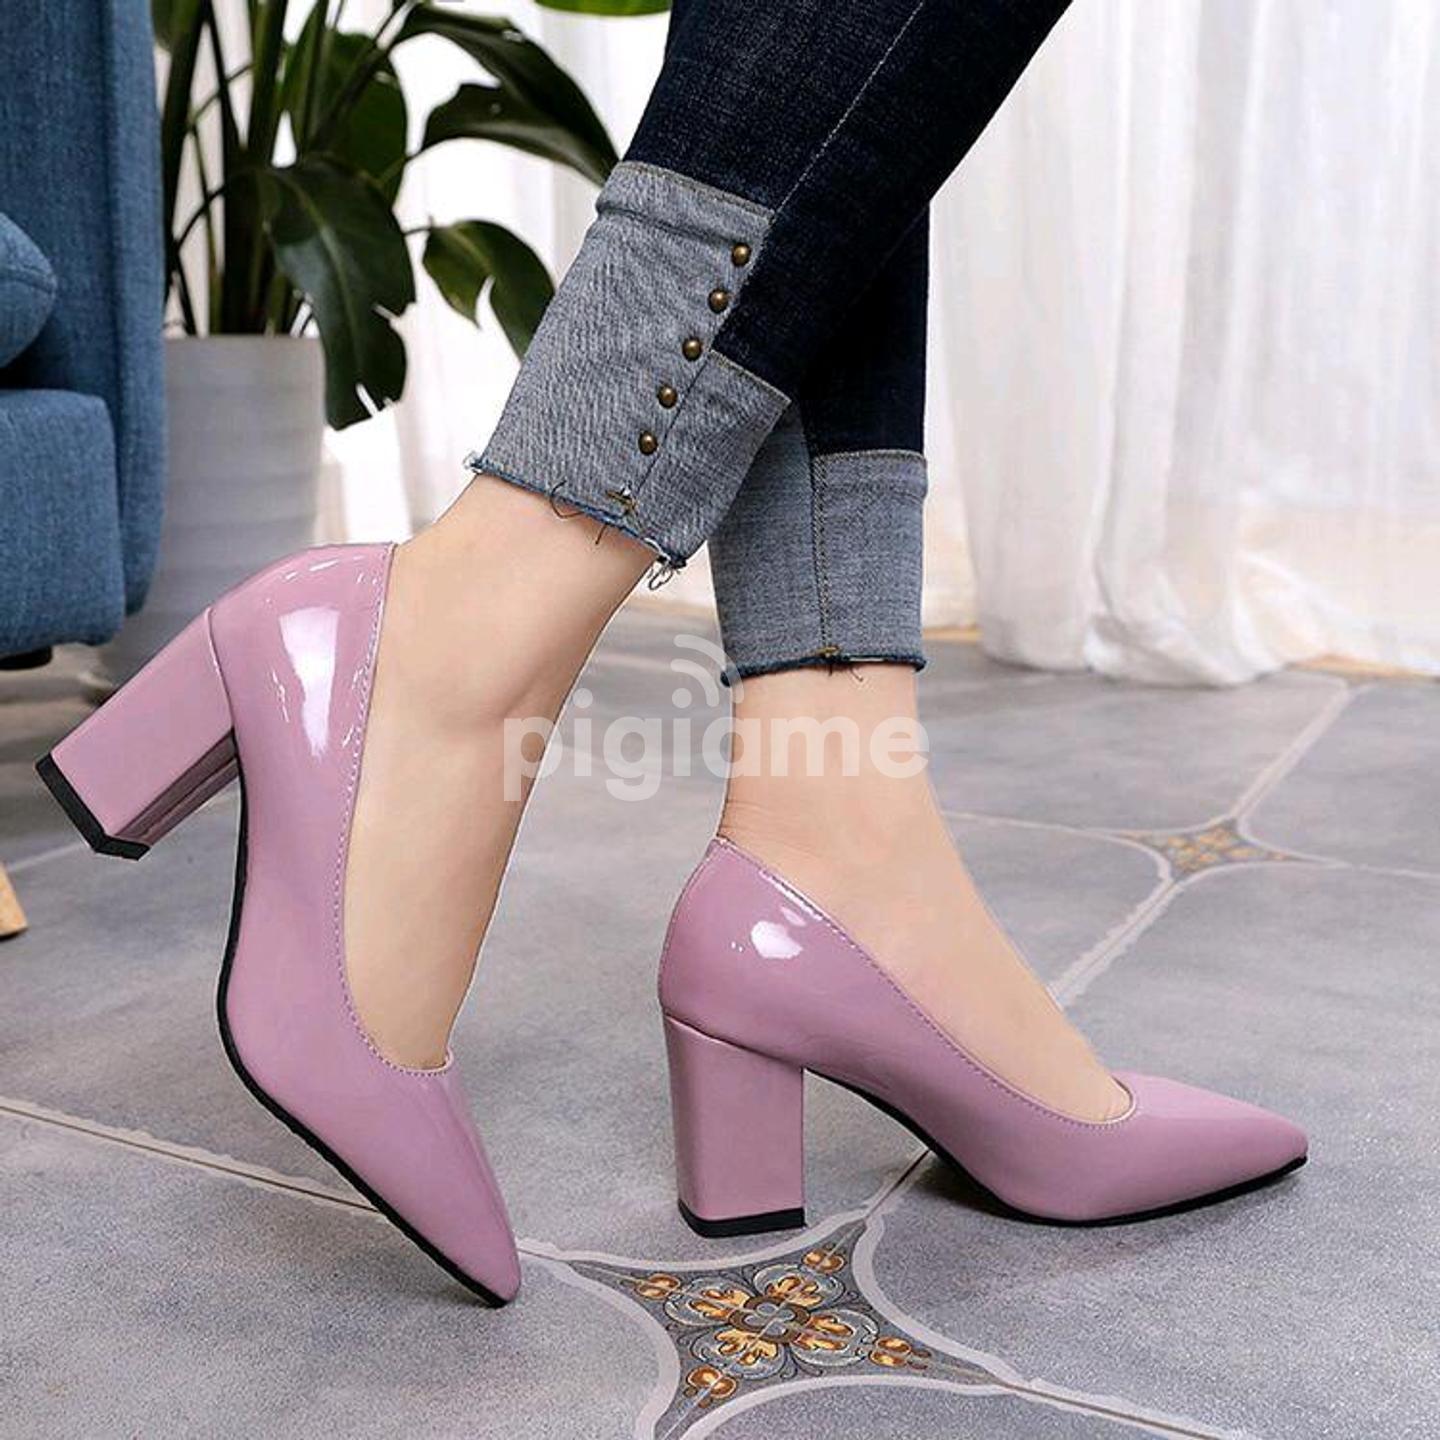 New trending heel beautiful design new collection heels design beautiful  background in park and Korea design sandals & flower